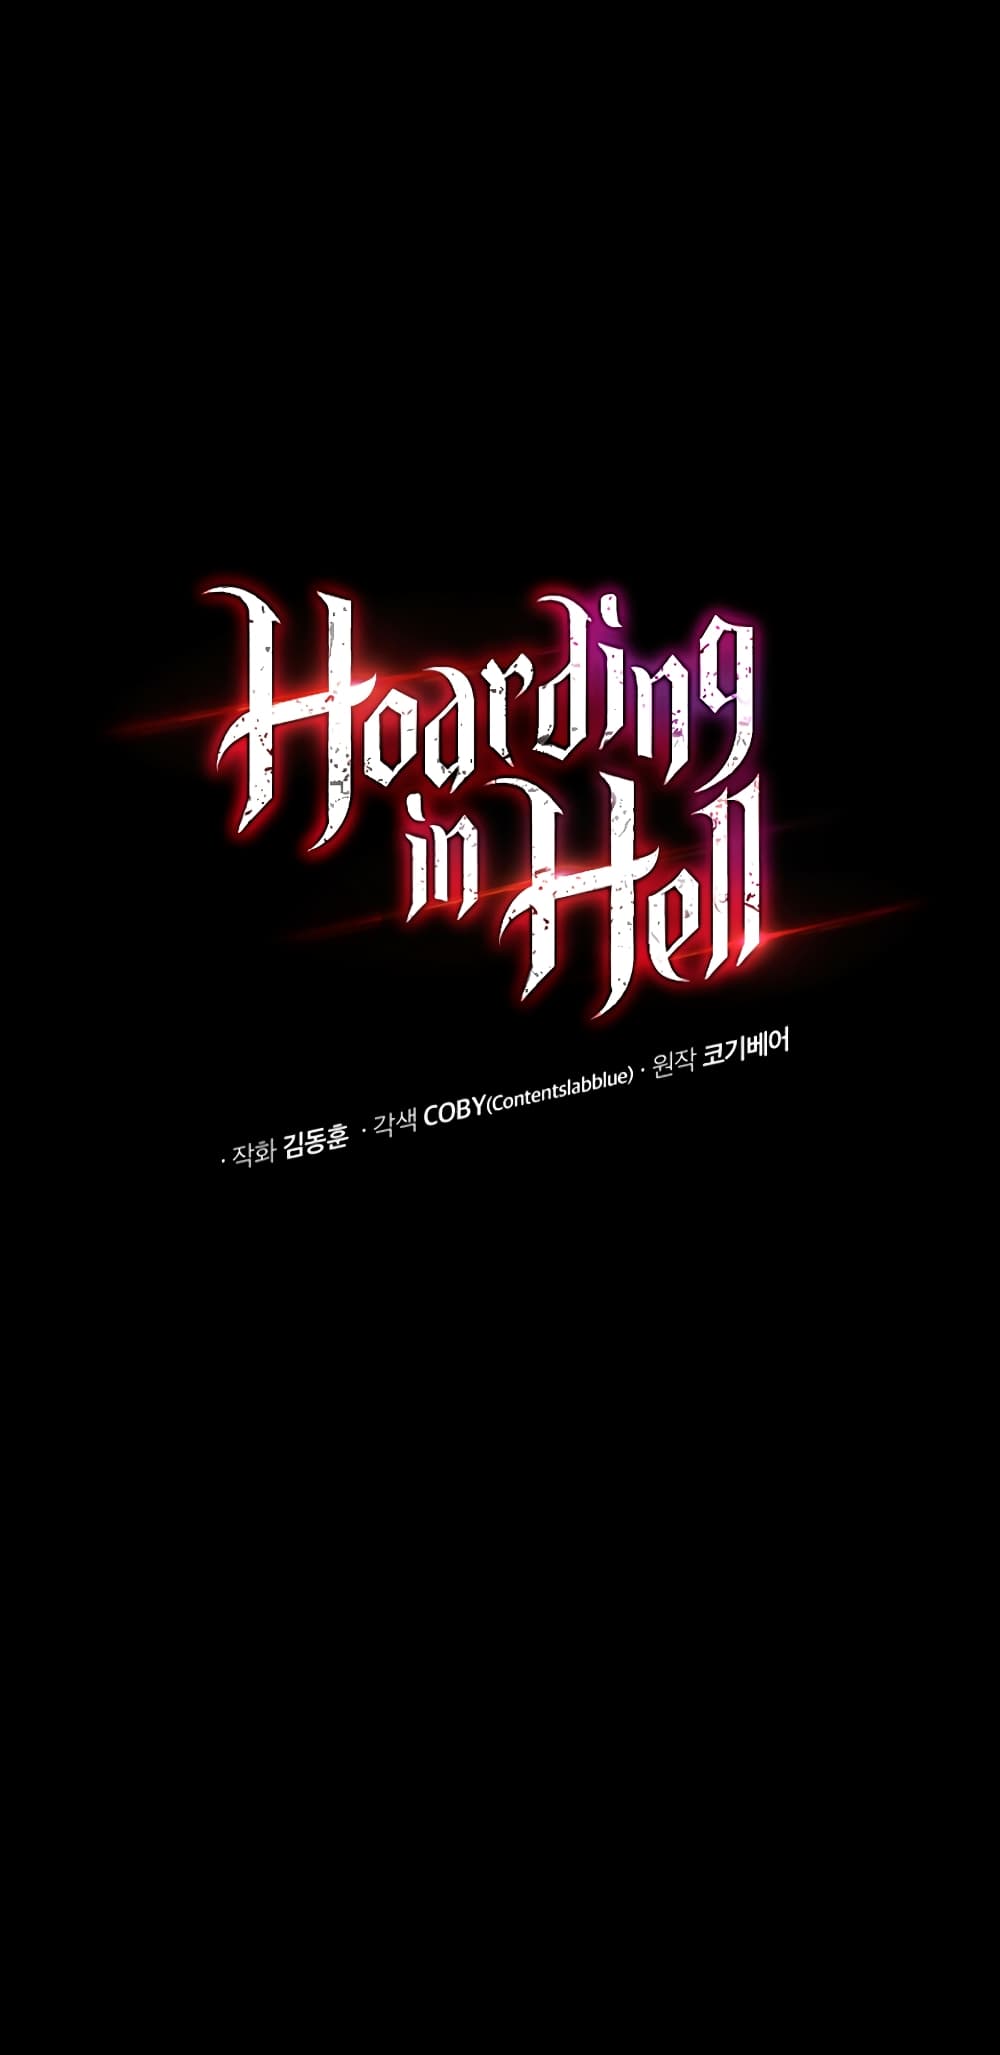 Hoarding in Hell21 06